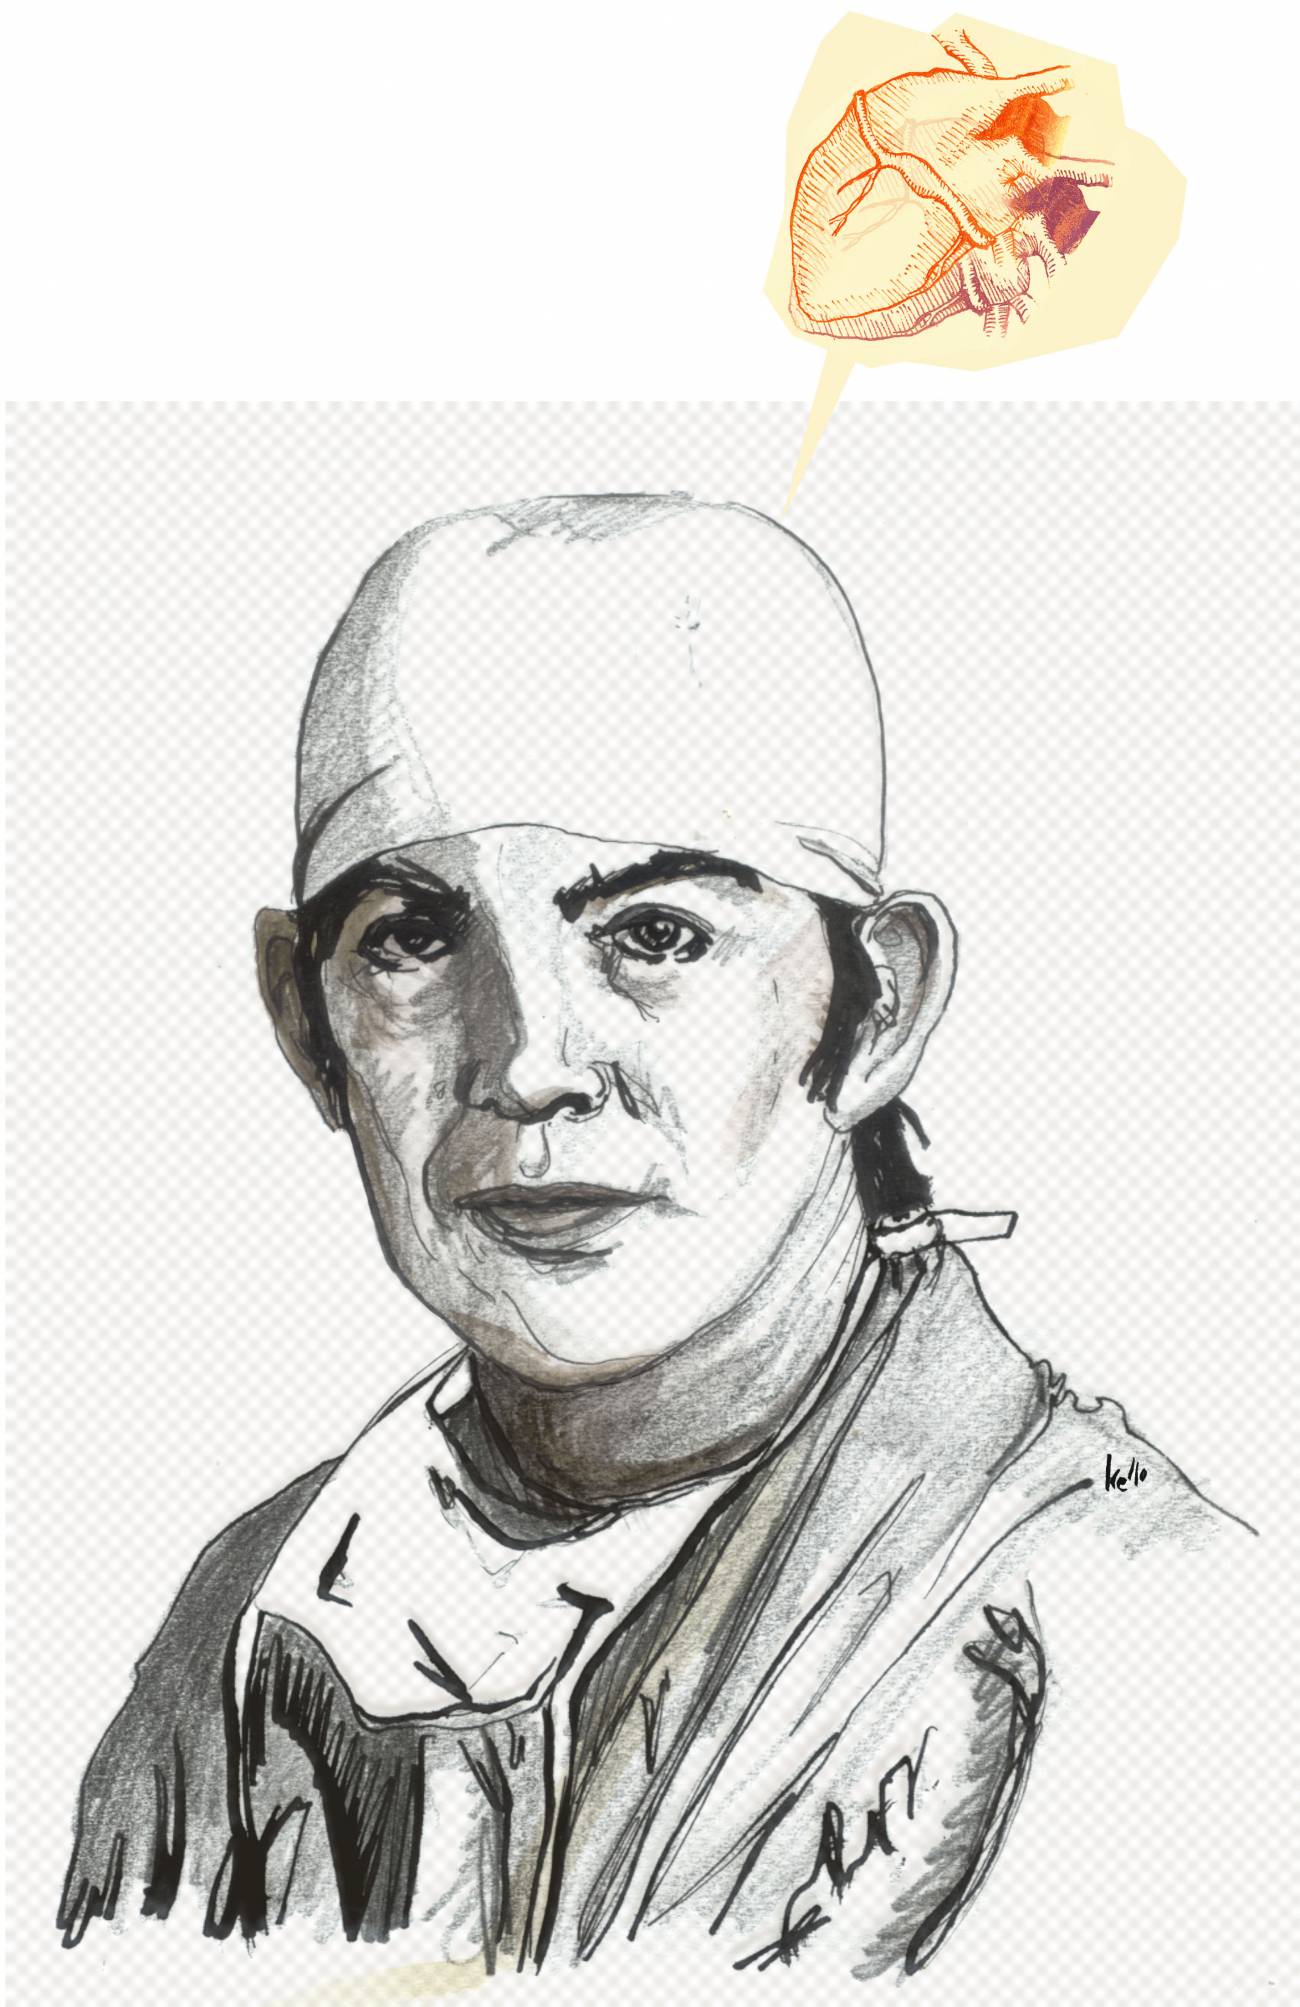 Noviembre de 1967, Ciudad de El Cabo, Sudáfrica: el cirujano Christiaan Barnard realiza el primer trasplante de corazón de la historia